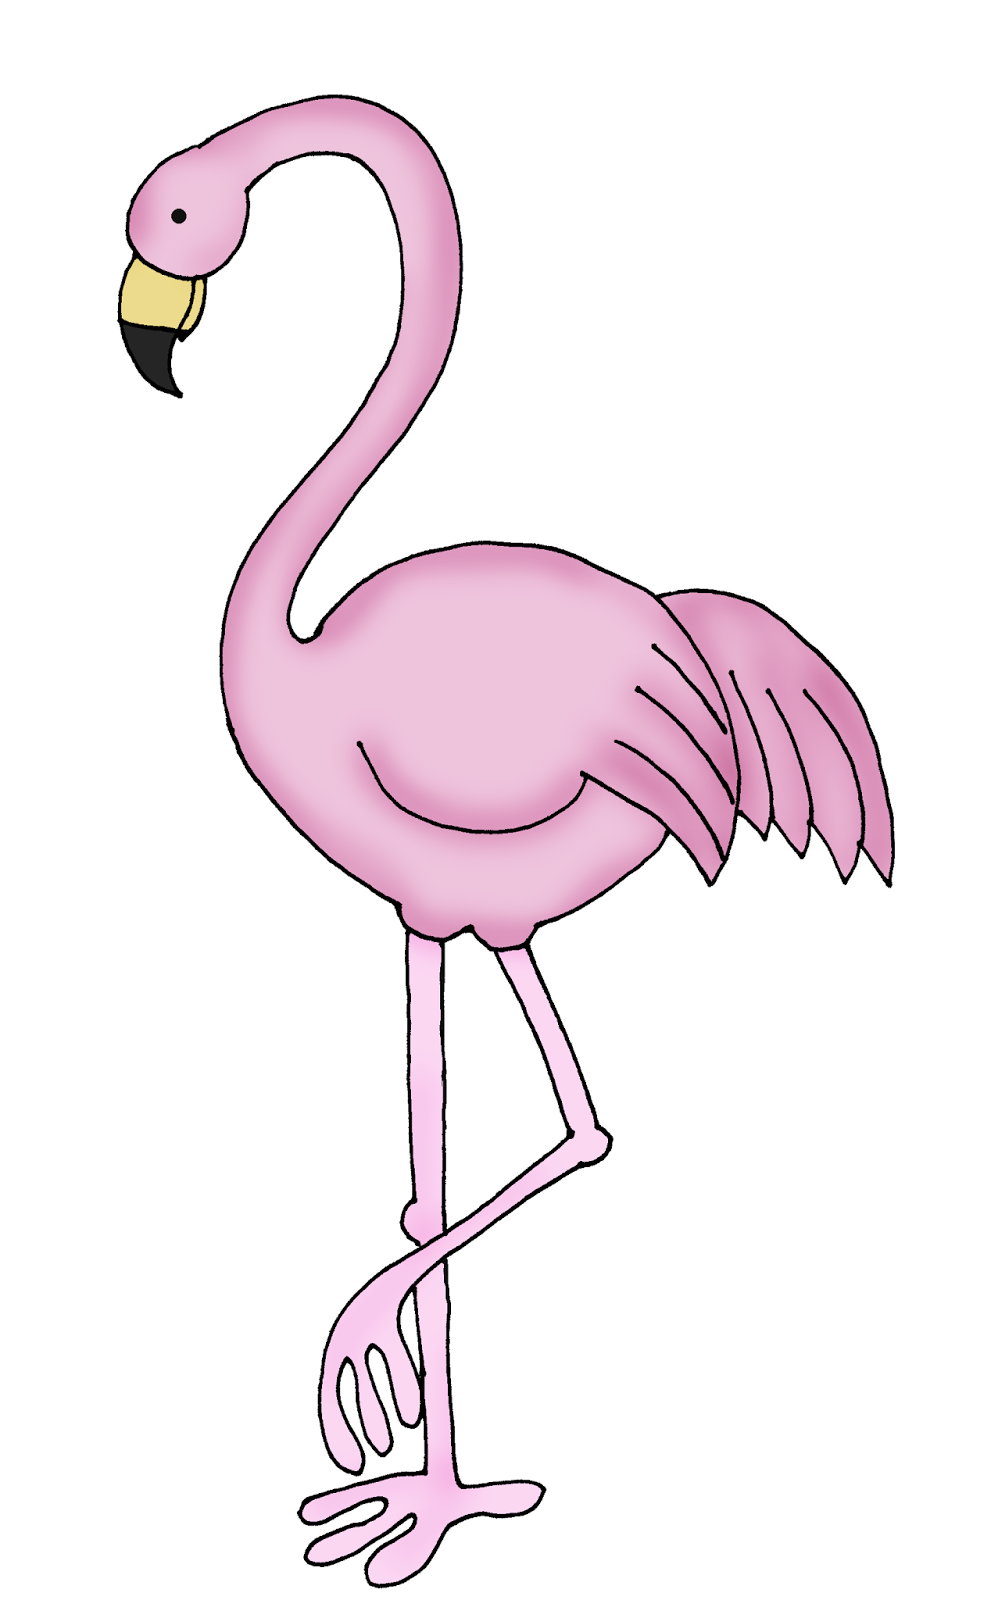 Flamingo Line Drawing flamingo stylized by detaylarda in 2020